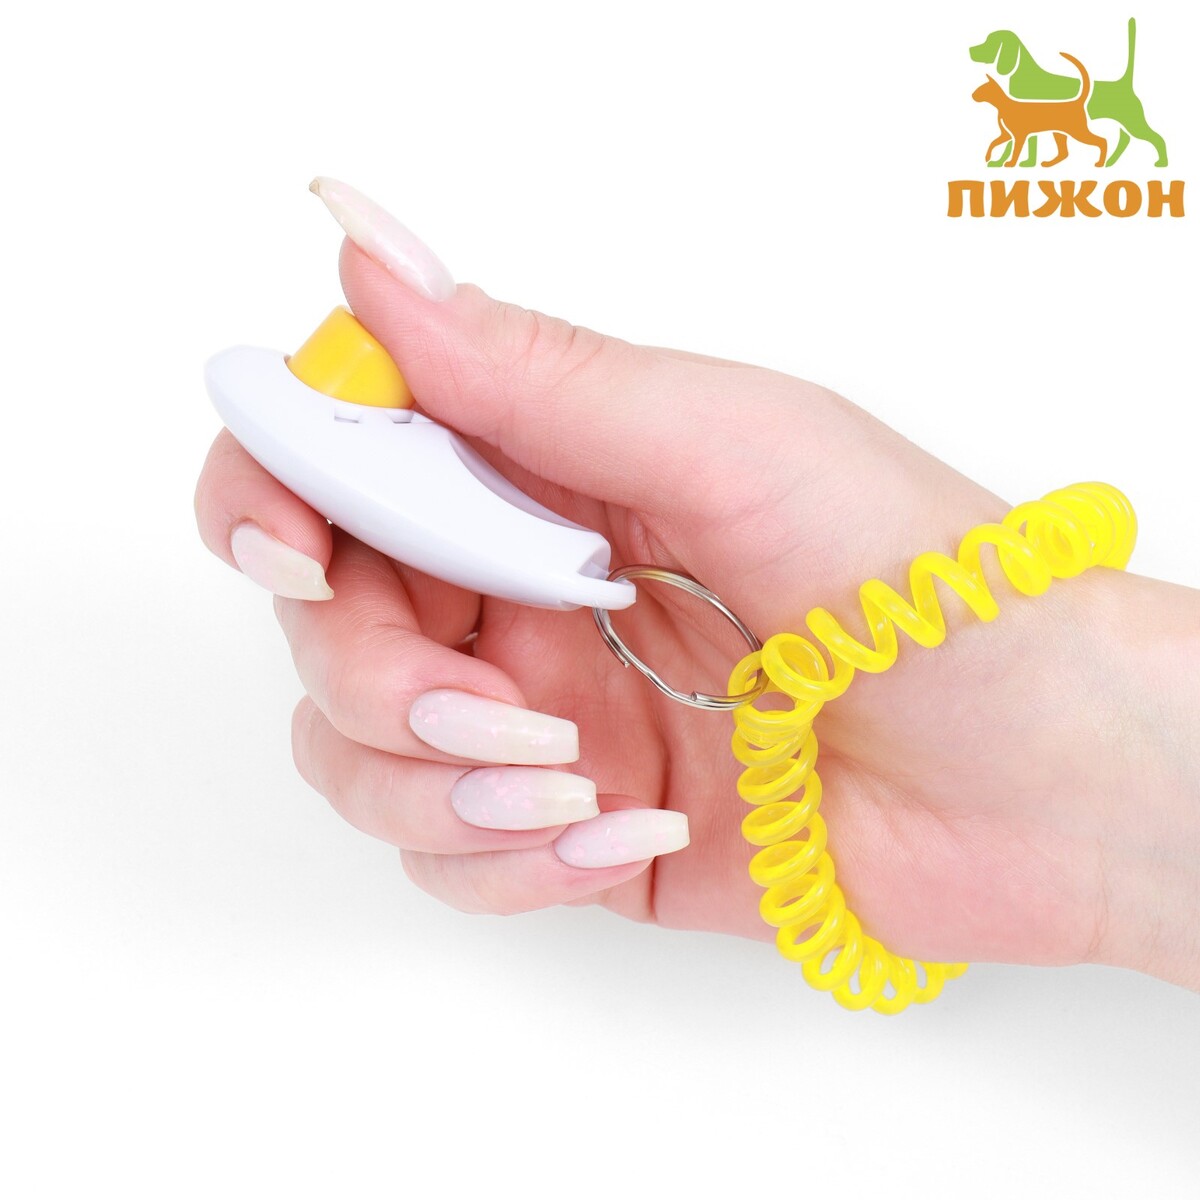 Кликер для дрессировки собак с браслетом на руку, белый звуковая кнопка кликер для дрессировки животных 9 х 9 х 5 см желтая